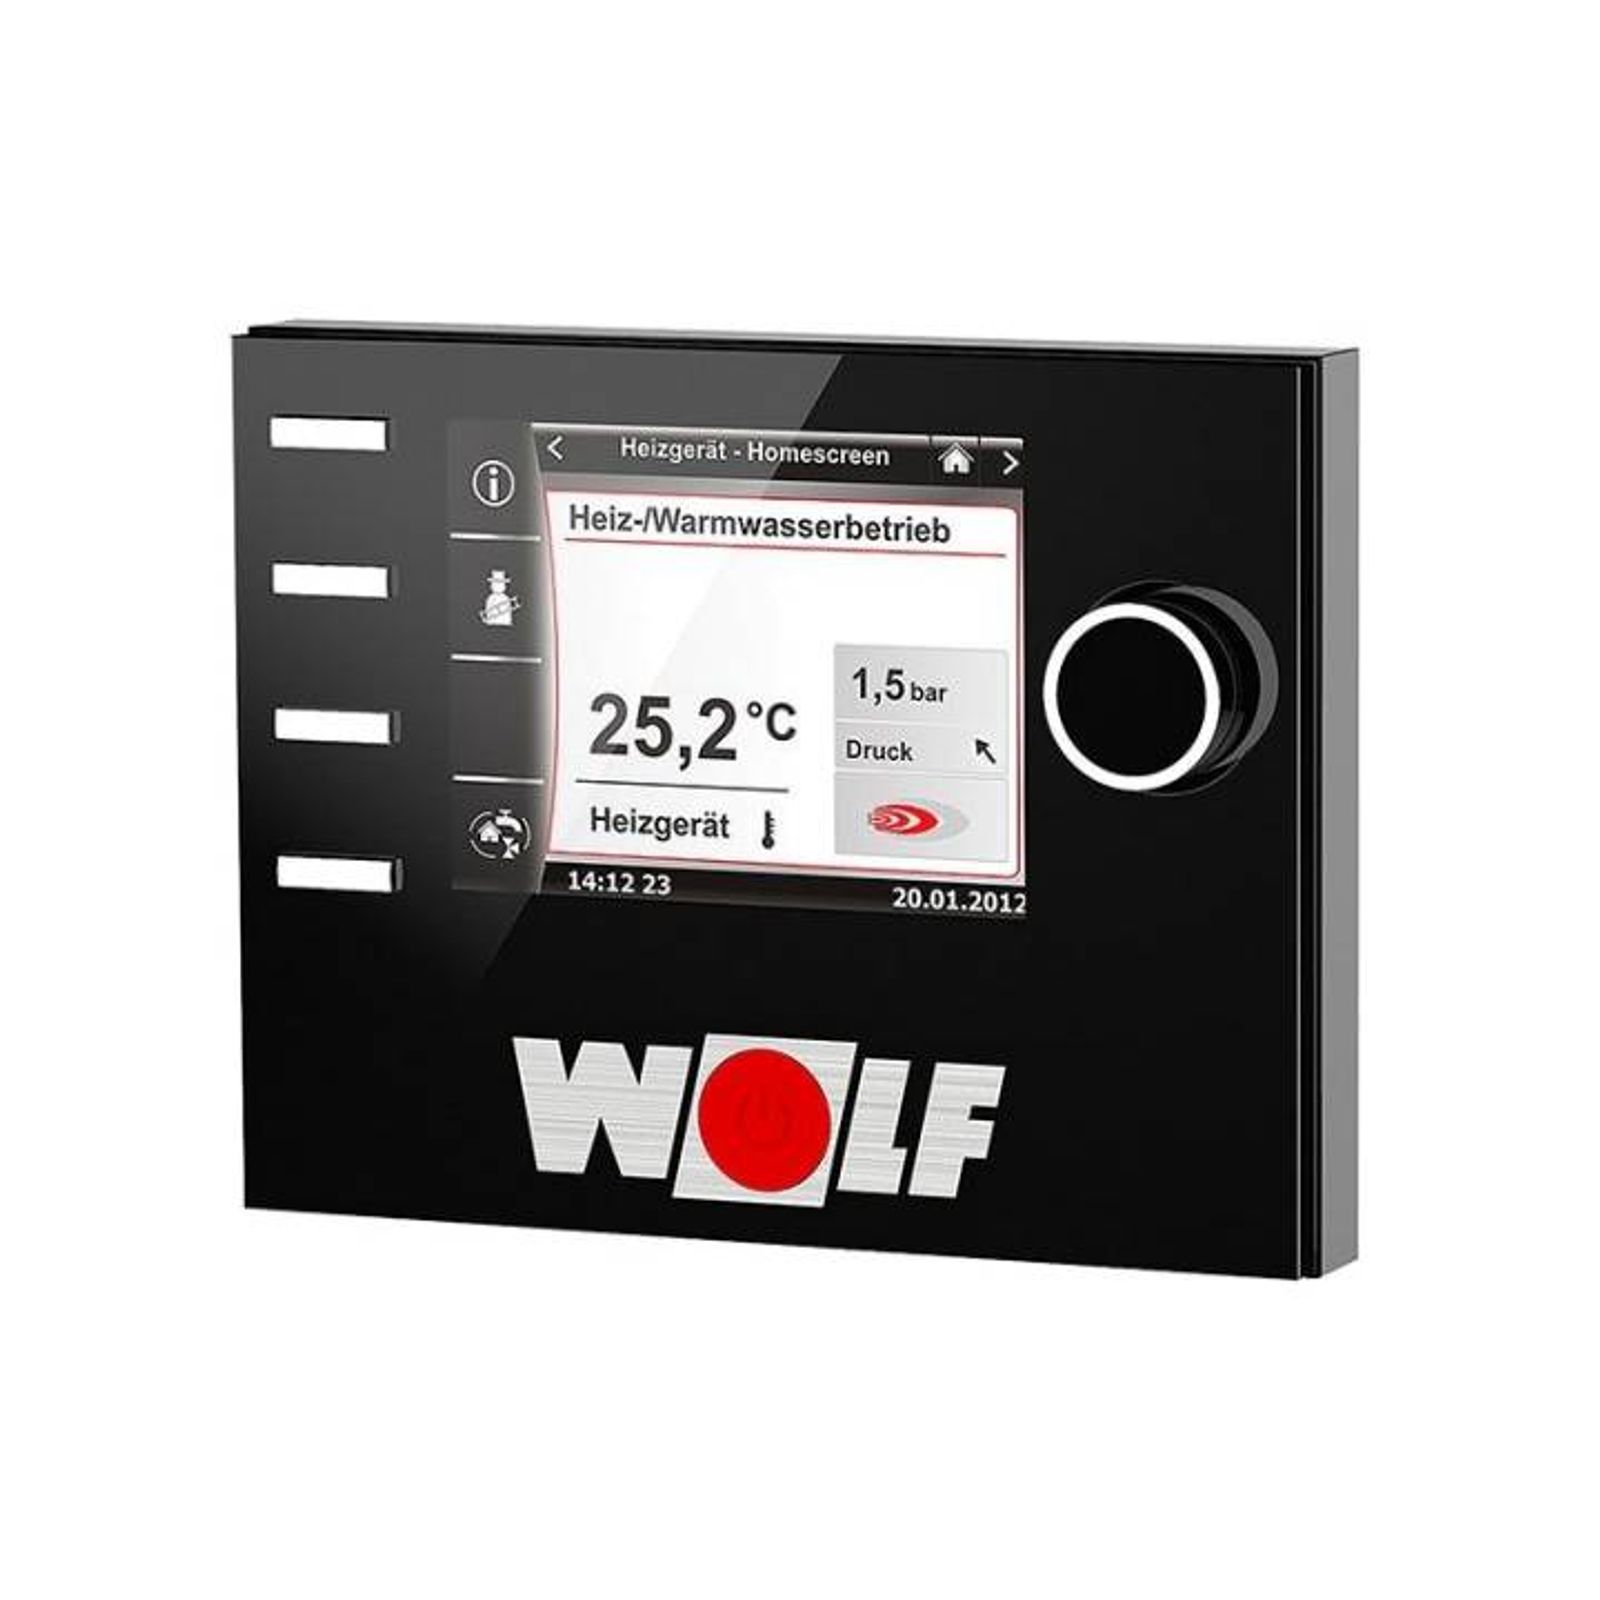 Wolf Gas-Brennwert 14 kW Kompaktheizzentrale CGS-2-14-120L